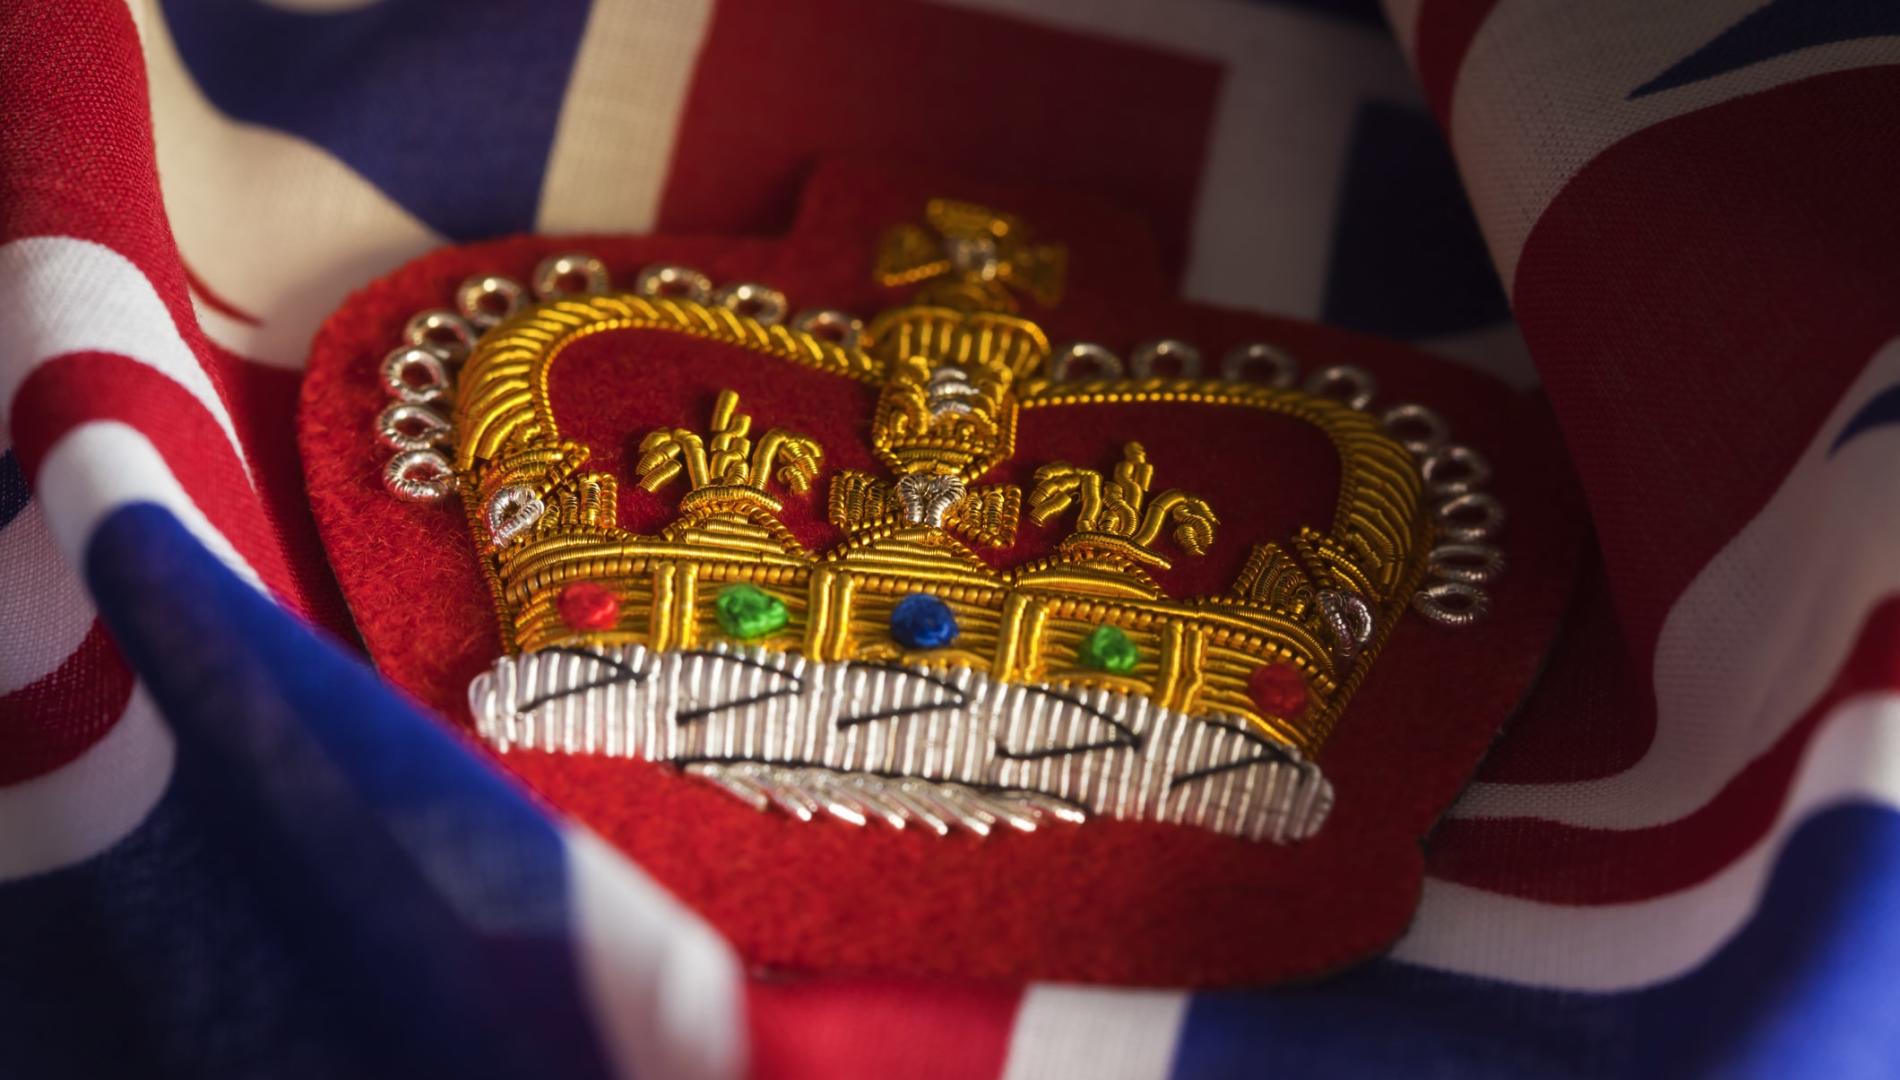 刺绣女王王冠徽章坐在英国国旗上